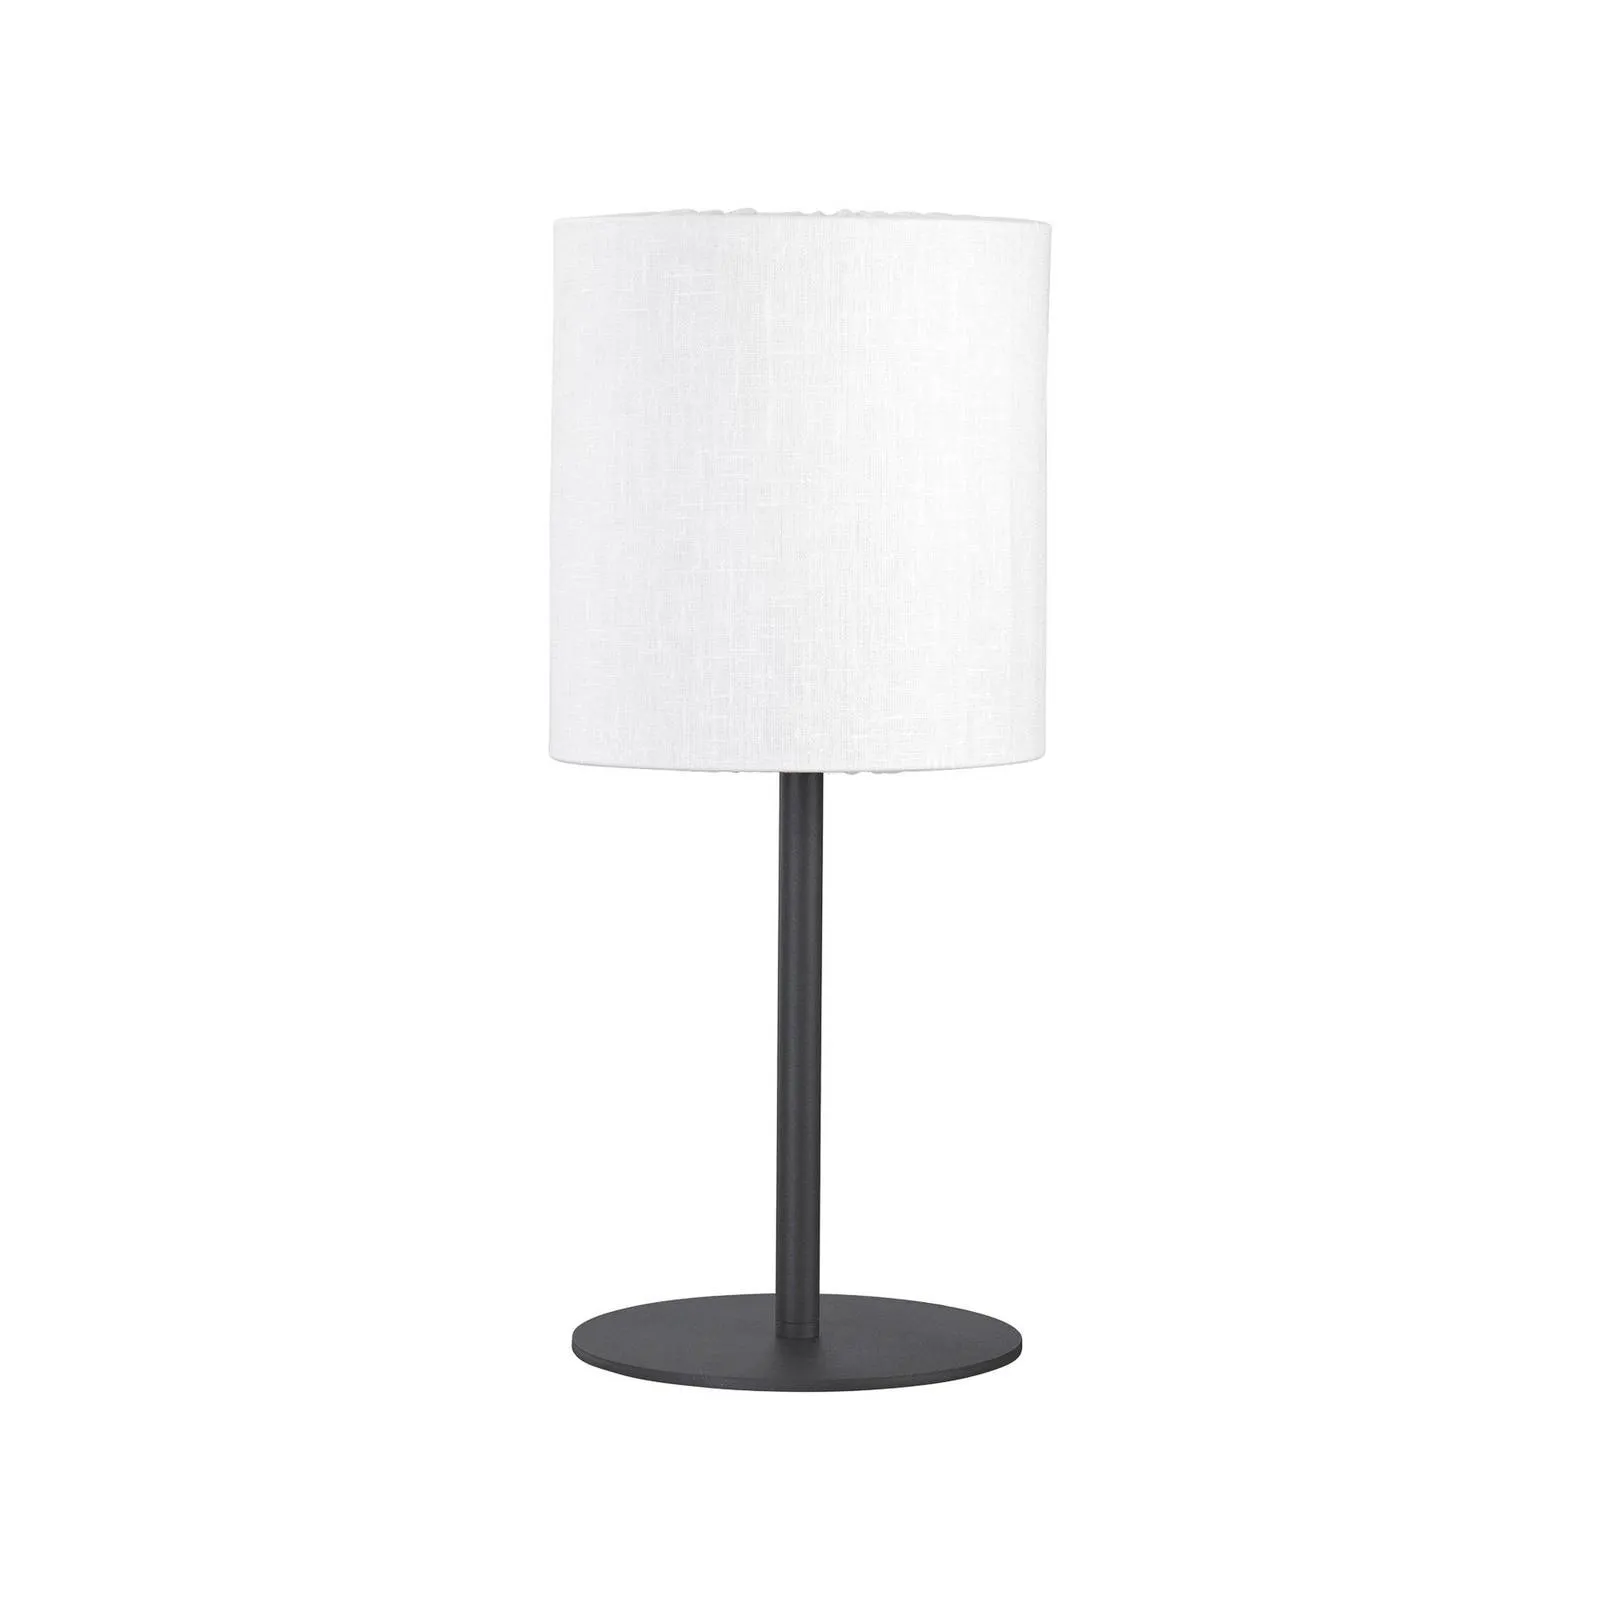  lampada da tavolo per esterni Agnar, grigio scuro / bianco, 57 cm